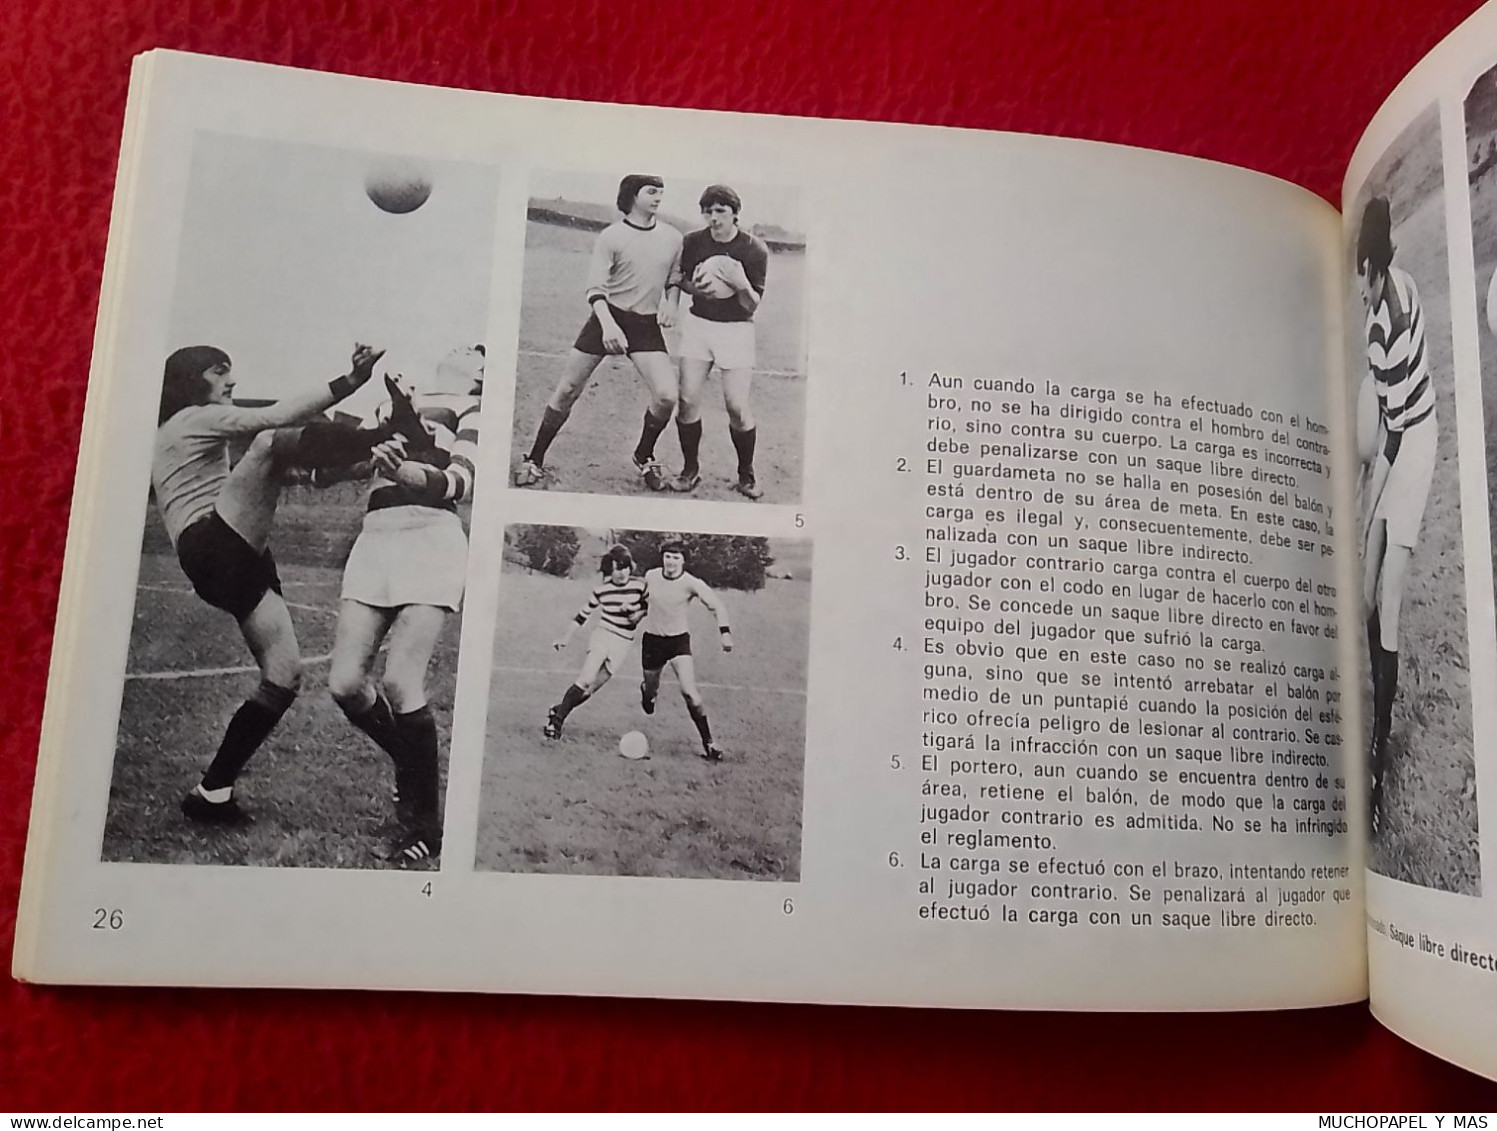 ANTIGUO LIBRO FÚTBOL CONOZCA EL JUEGO EDICIONES AURA 1976 SOCCER FOOTBALL CALCIO KNOW THE GAME...FUSSBALL FUTEBOL..SPORT